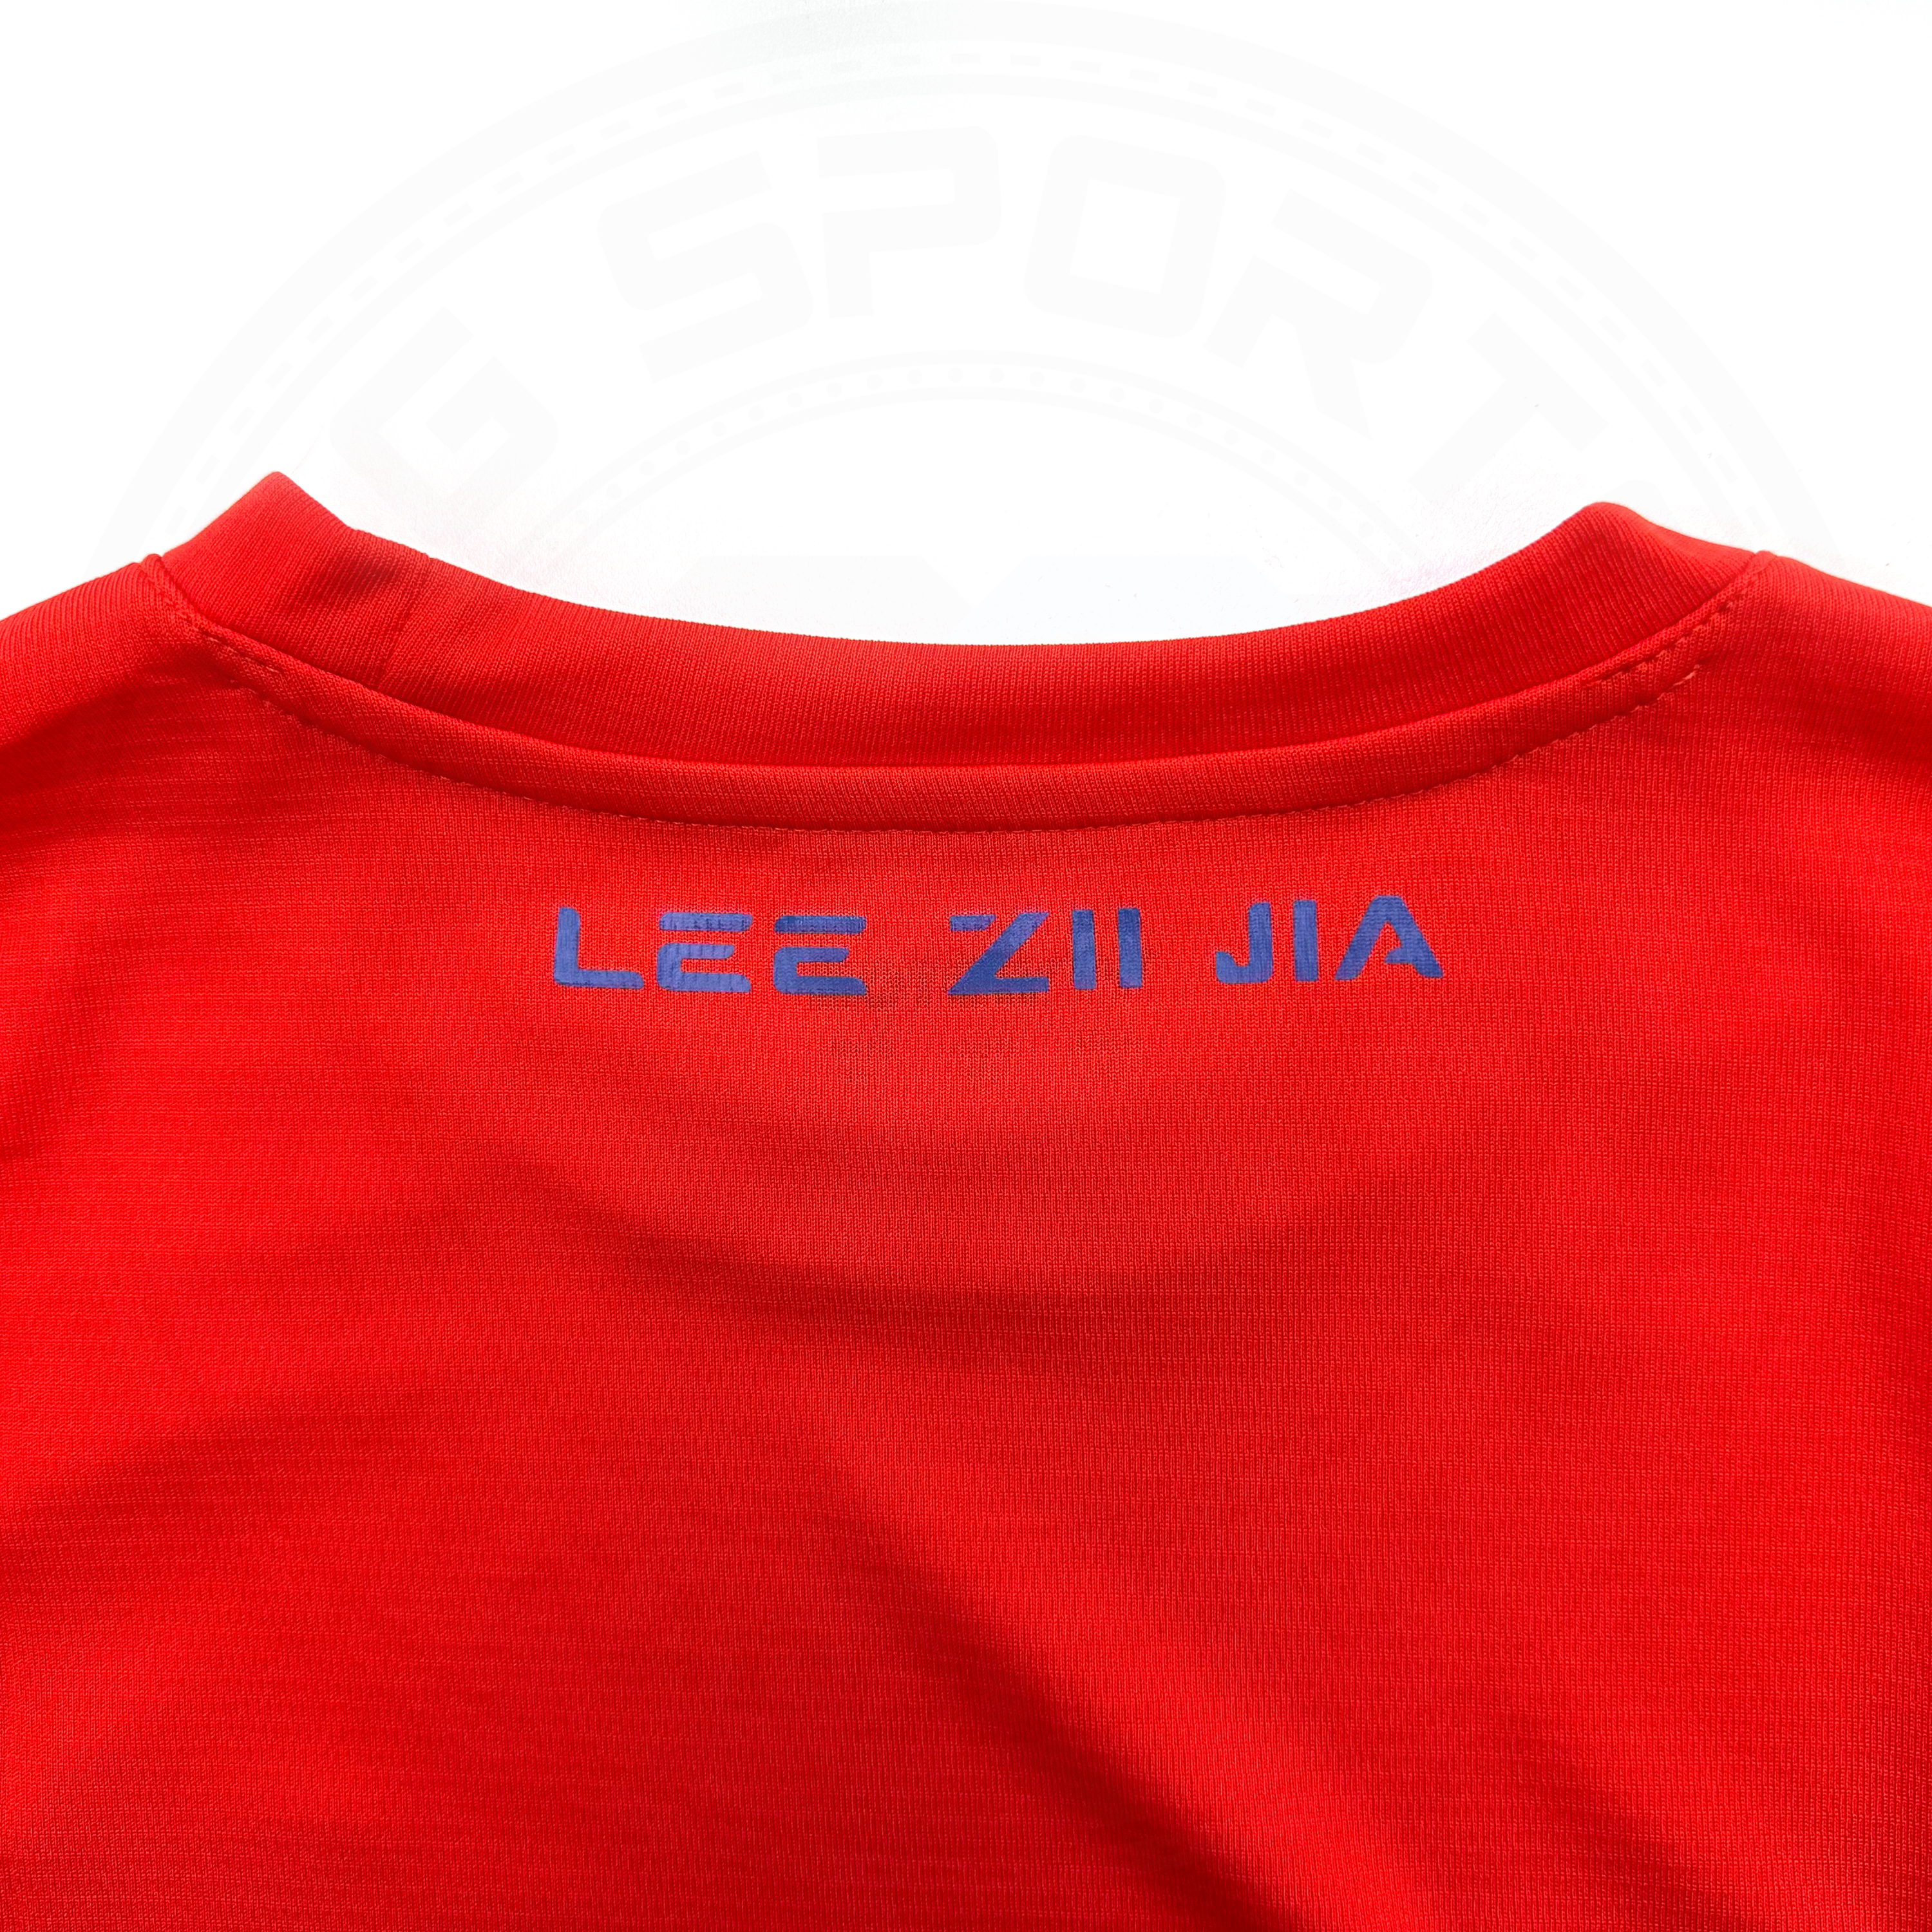 Victor X LZJ Cartoon Sports Shirt T20056D Red UNISEX